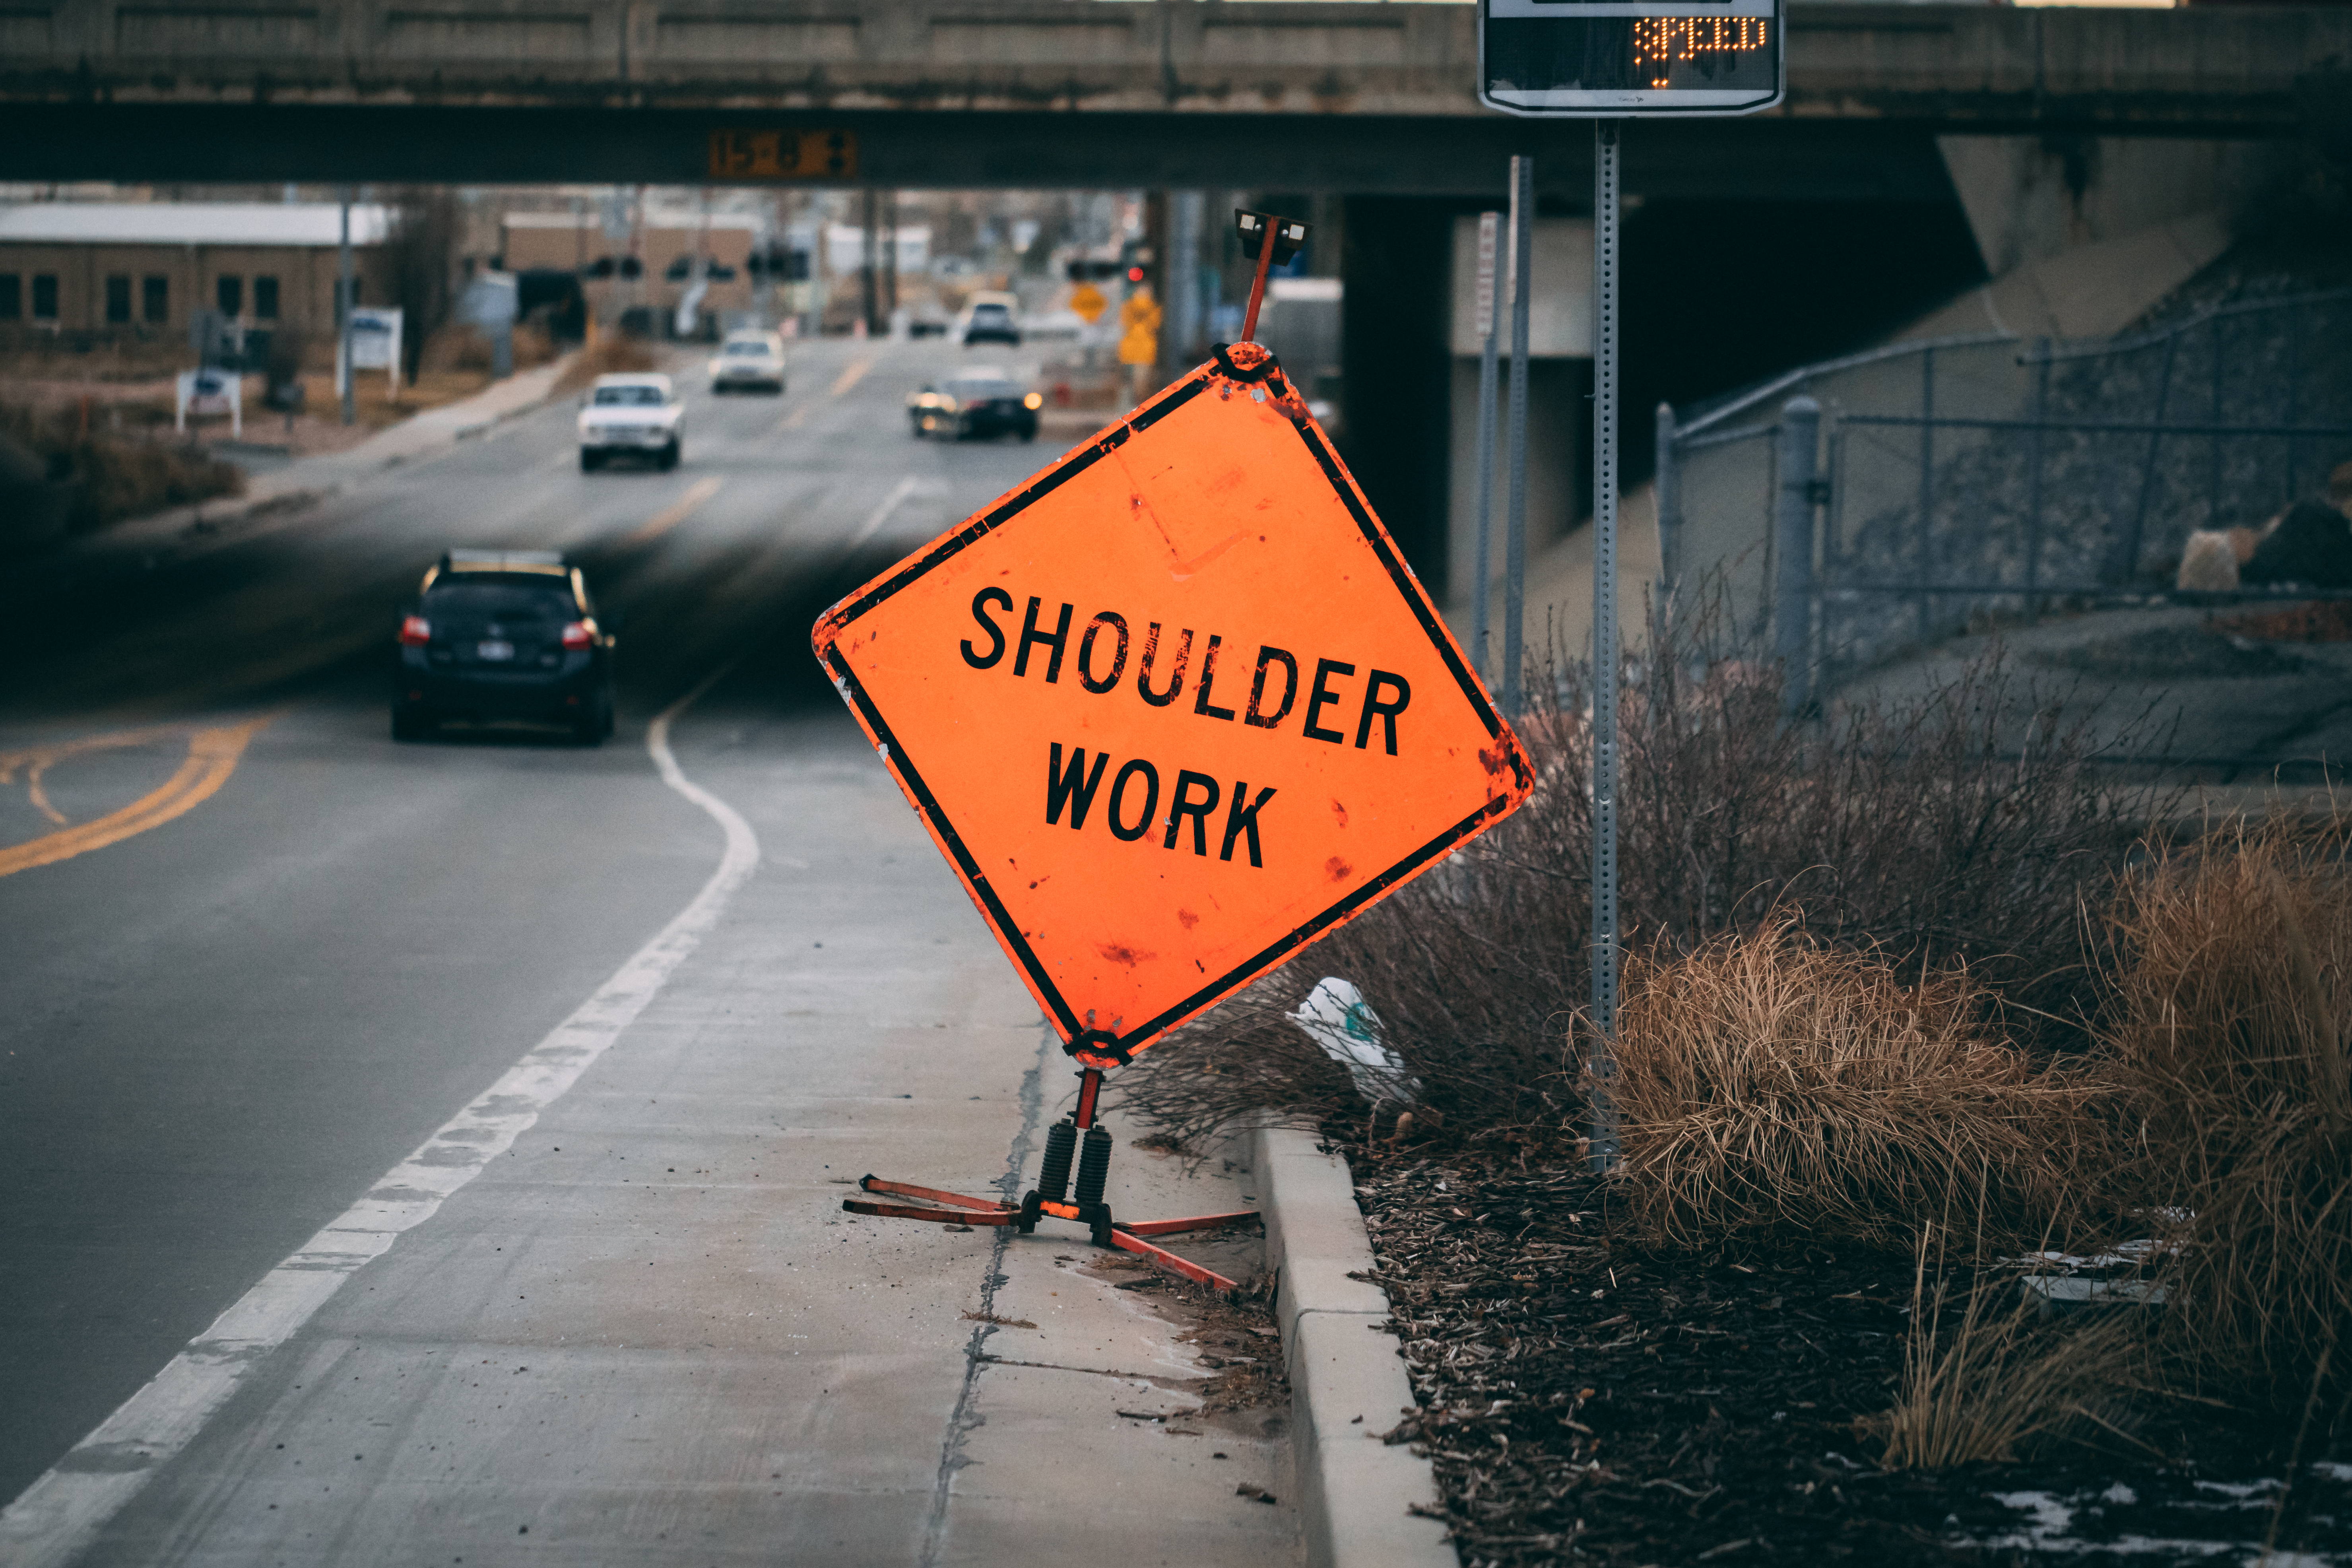 Shoulder work sign